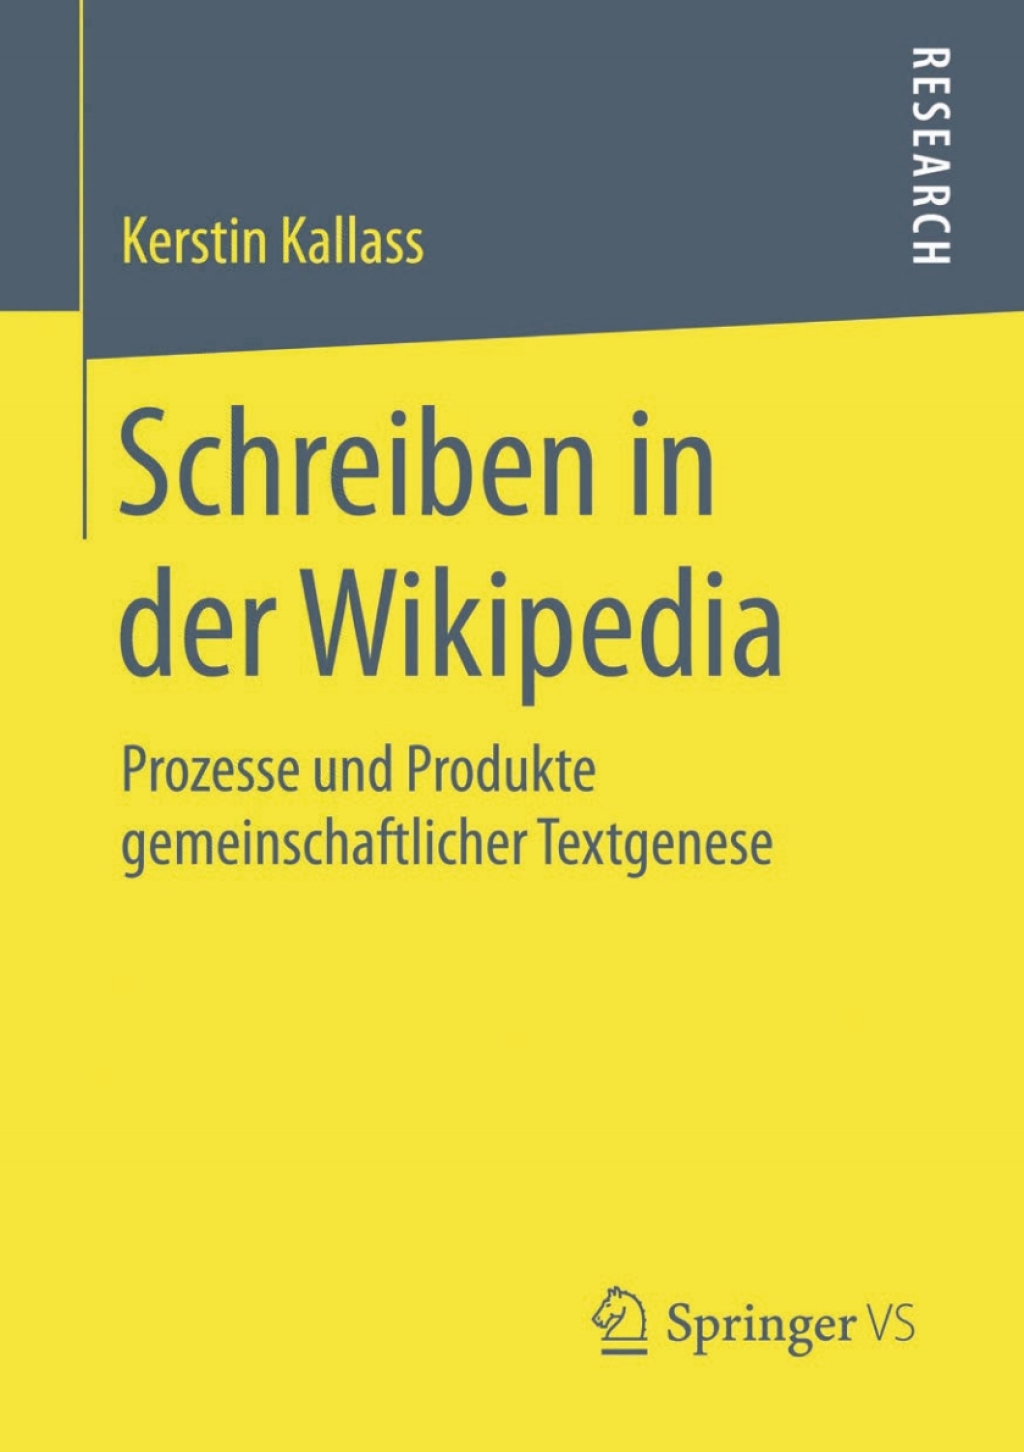 Schreiben in der Wikipedia (eBook) - Kerstin Kallass,